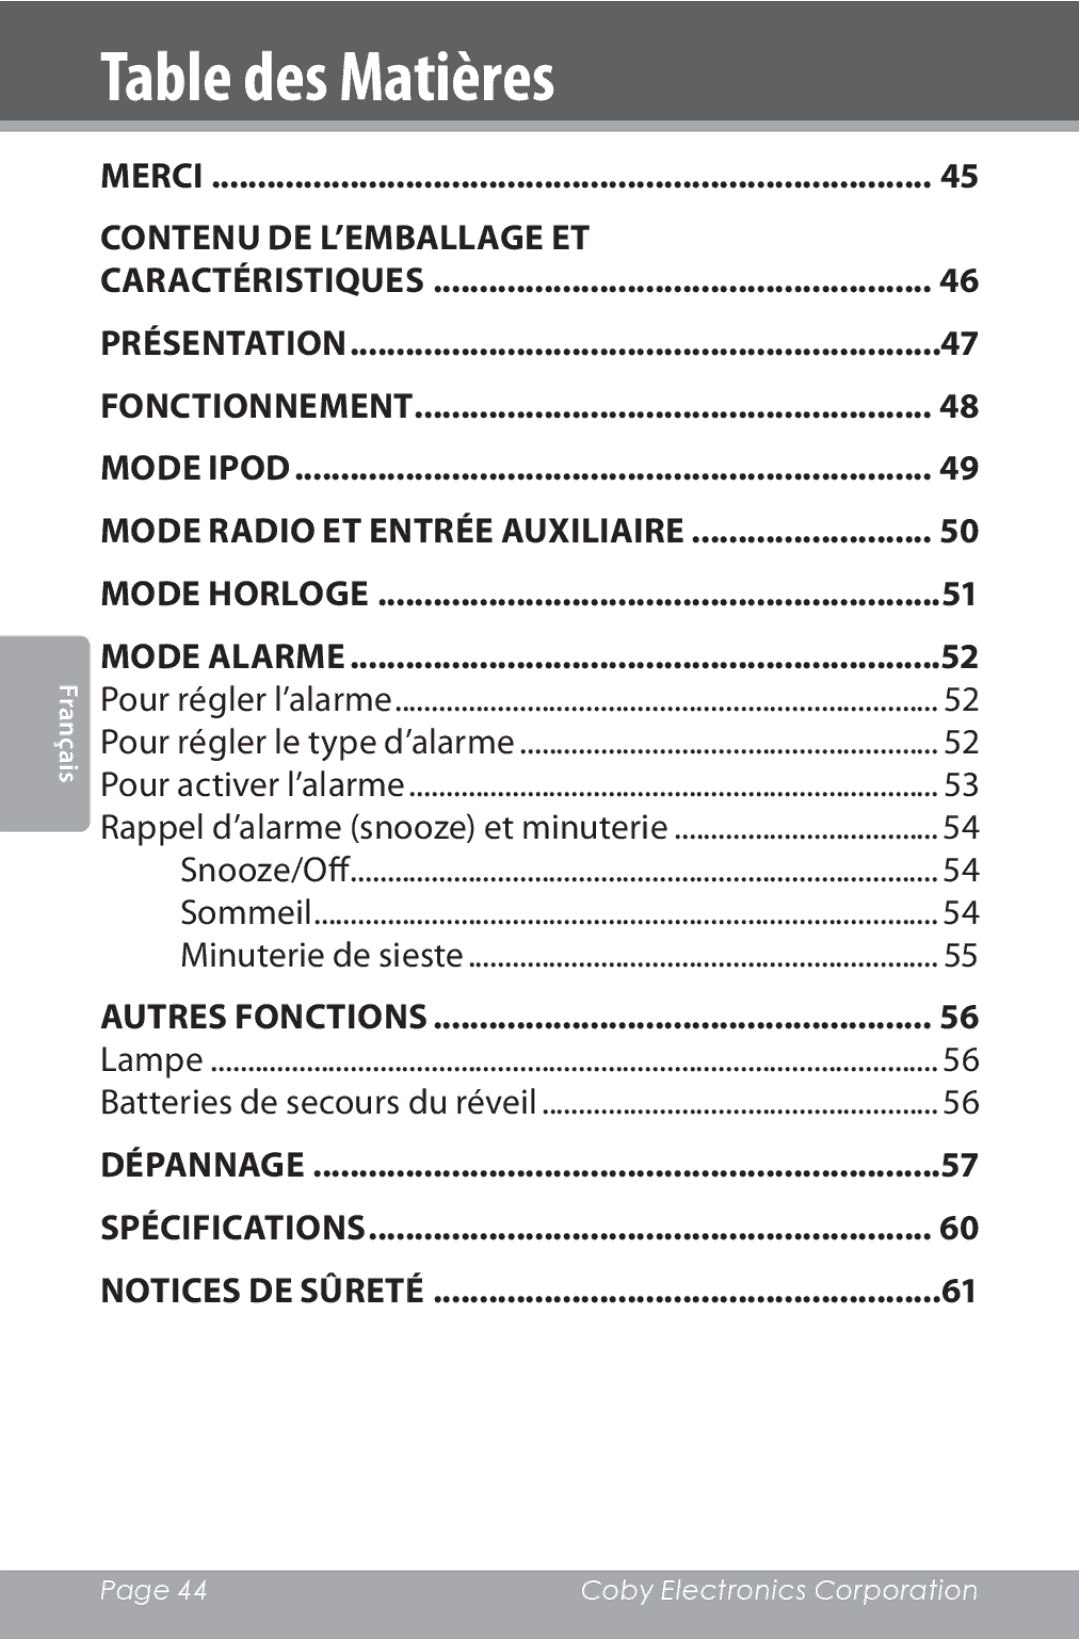 COBY electronic CSMP162 instruction manual Table des Matières, Mode Radio et Entrée Auxiliaire 